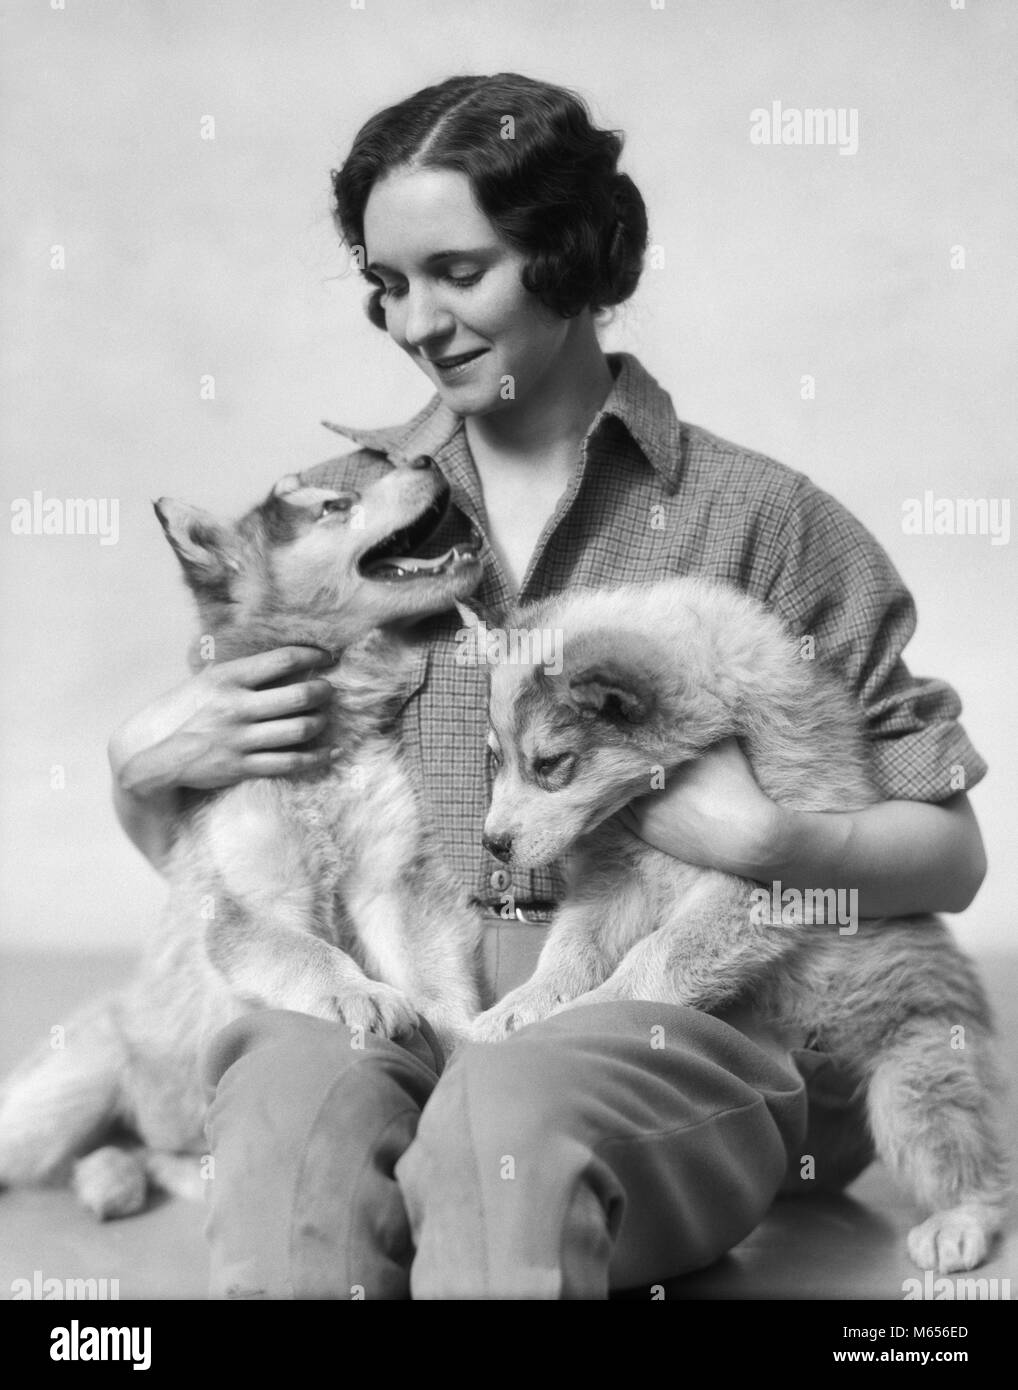 Années 1920 Années 1930 SMILING WOMAN HOLDING DEUX CHIOTS HUSKY sur ses genoux - d3257 HAR001 HARS NOSTALGIE TOUR ensemble 20 à 25 ans 25 à 30 ans de bonheur deux animaux mammifères CANINES CONNEXION CONCEPTUELLE joyeux sourire énergique CANINE MAMMIFÈRE HUSKY MID-ADULT WOMAN FEMME B&W NOIR ET BLANC PORTRAIT DE L'ORIGINE ETHNIQUE DES PERSONNES À L'ANCIENNE Banque D'Images